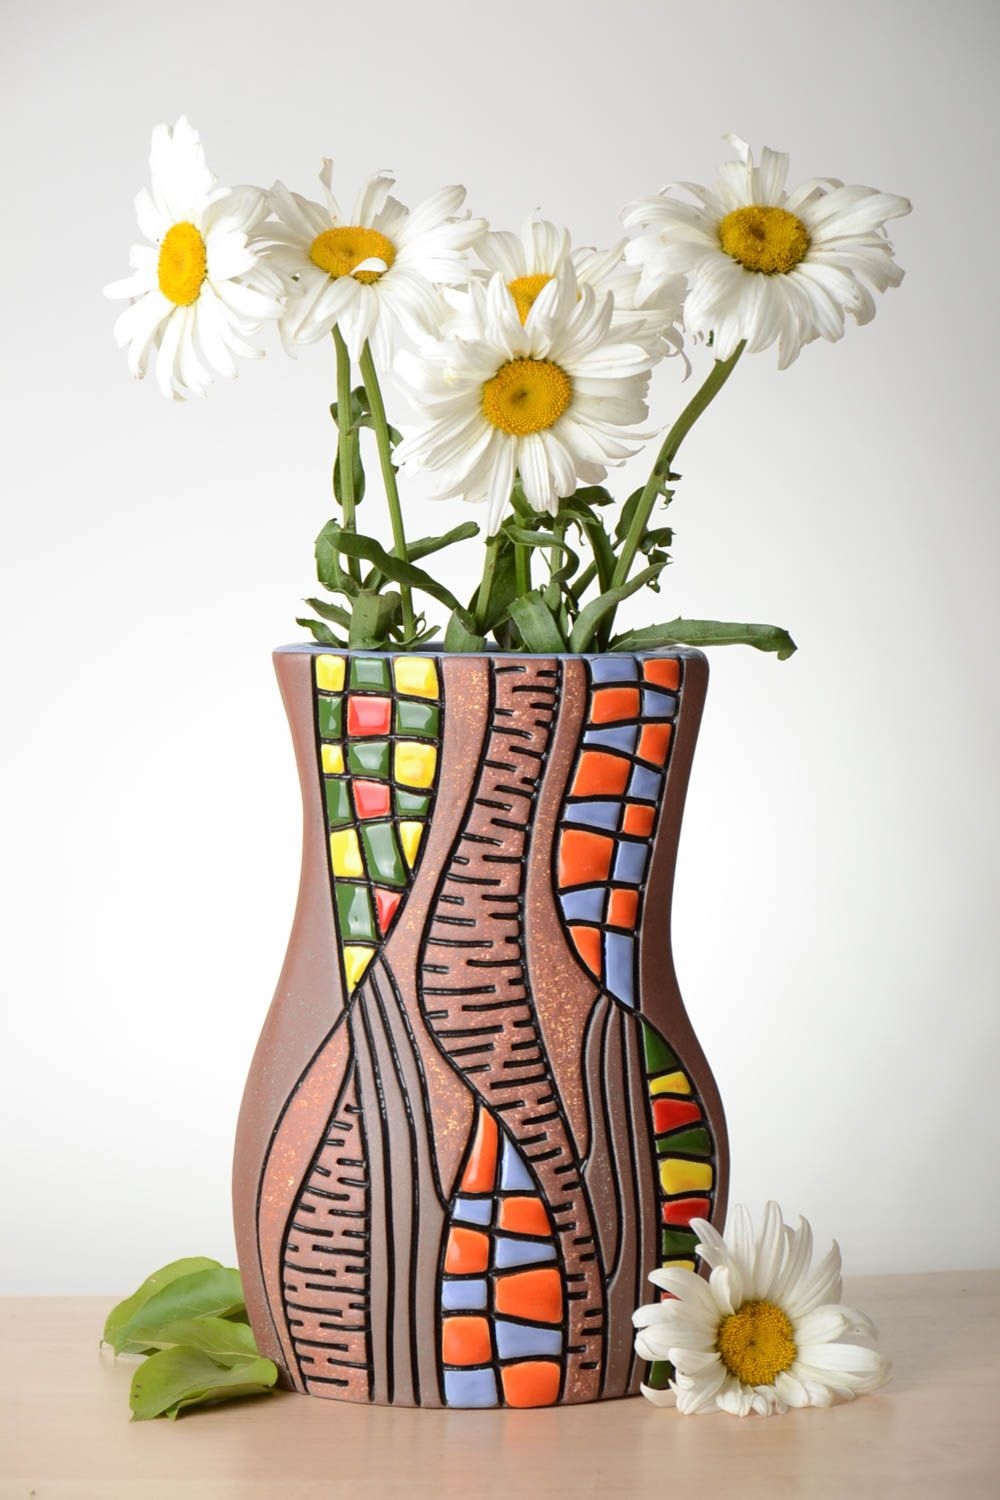 Цветы и букеты из полимерной глины ручной работы Снежаны Устиновой